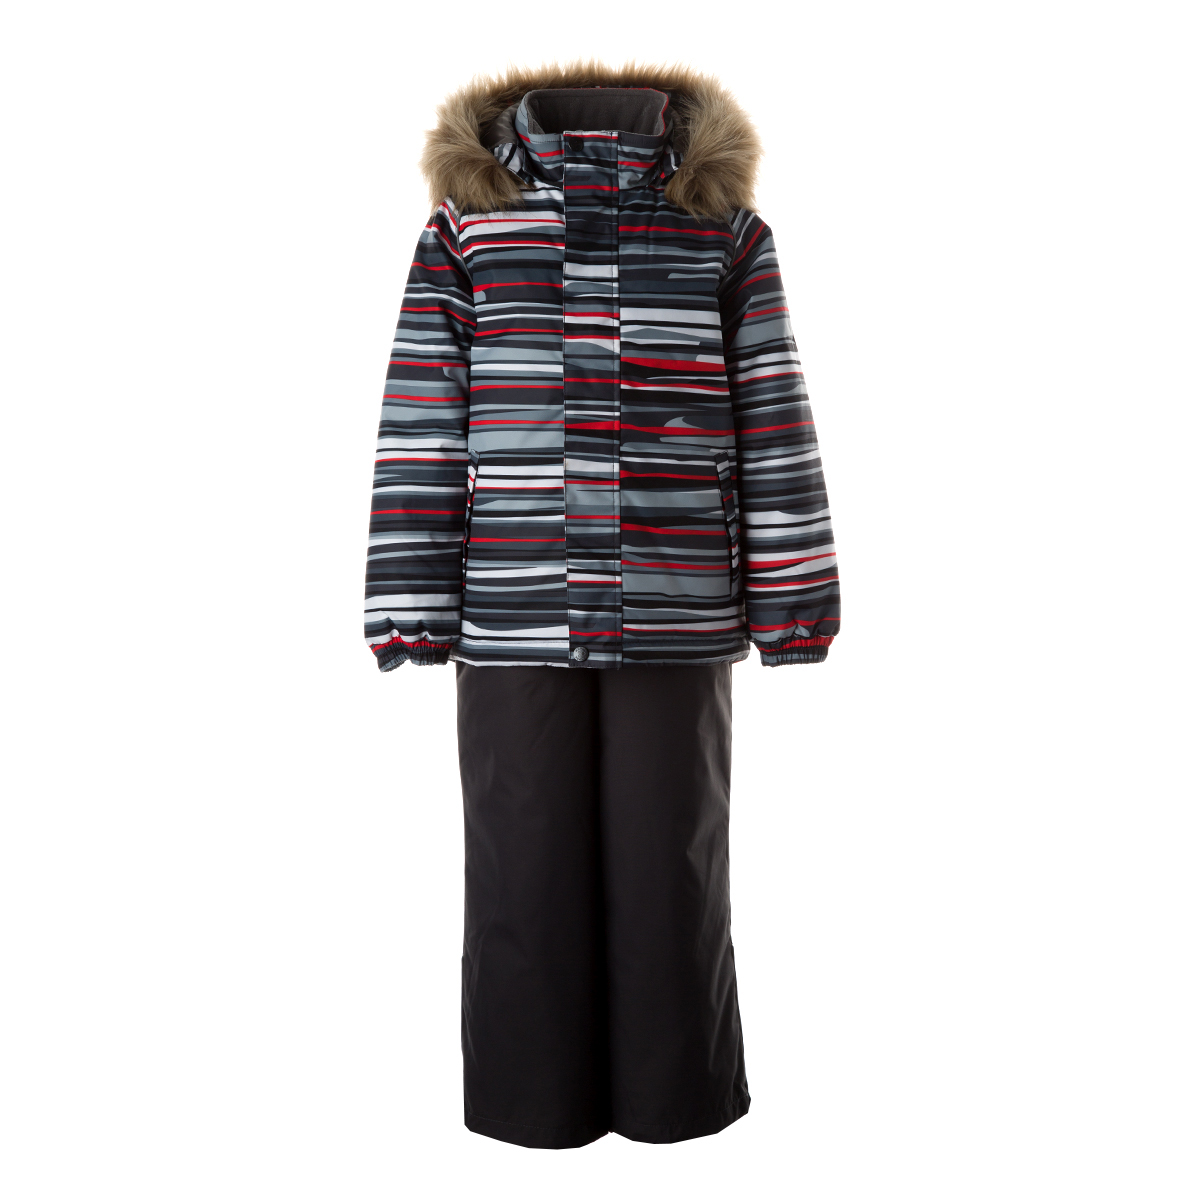 Комплект верхней одежды детский Huppa WINTER цв. темно-серая полоска/темно-серый р. 116